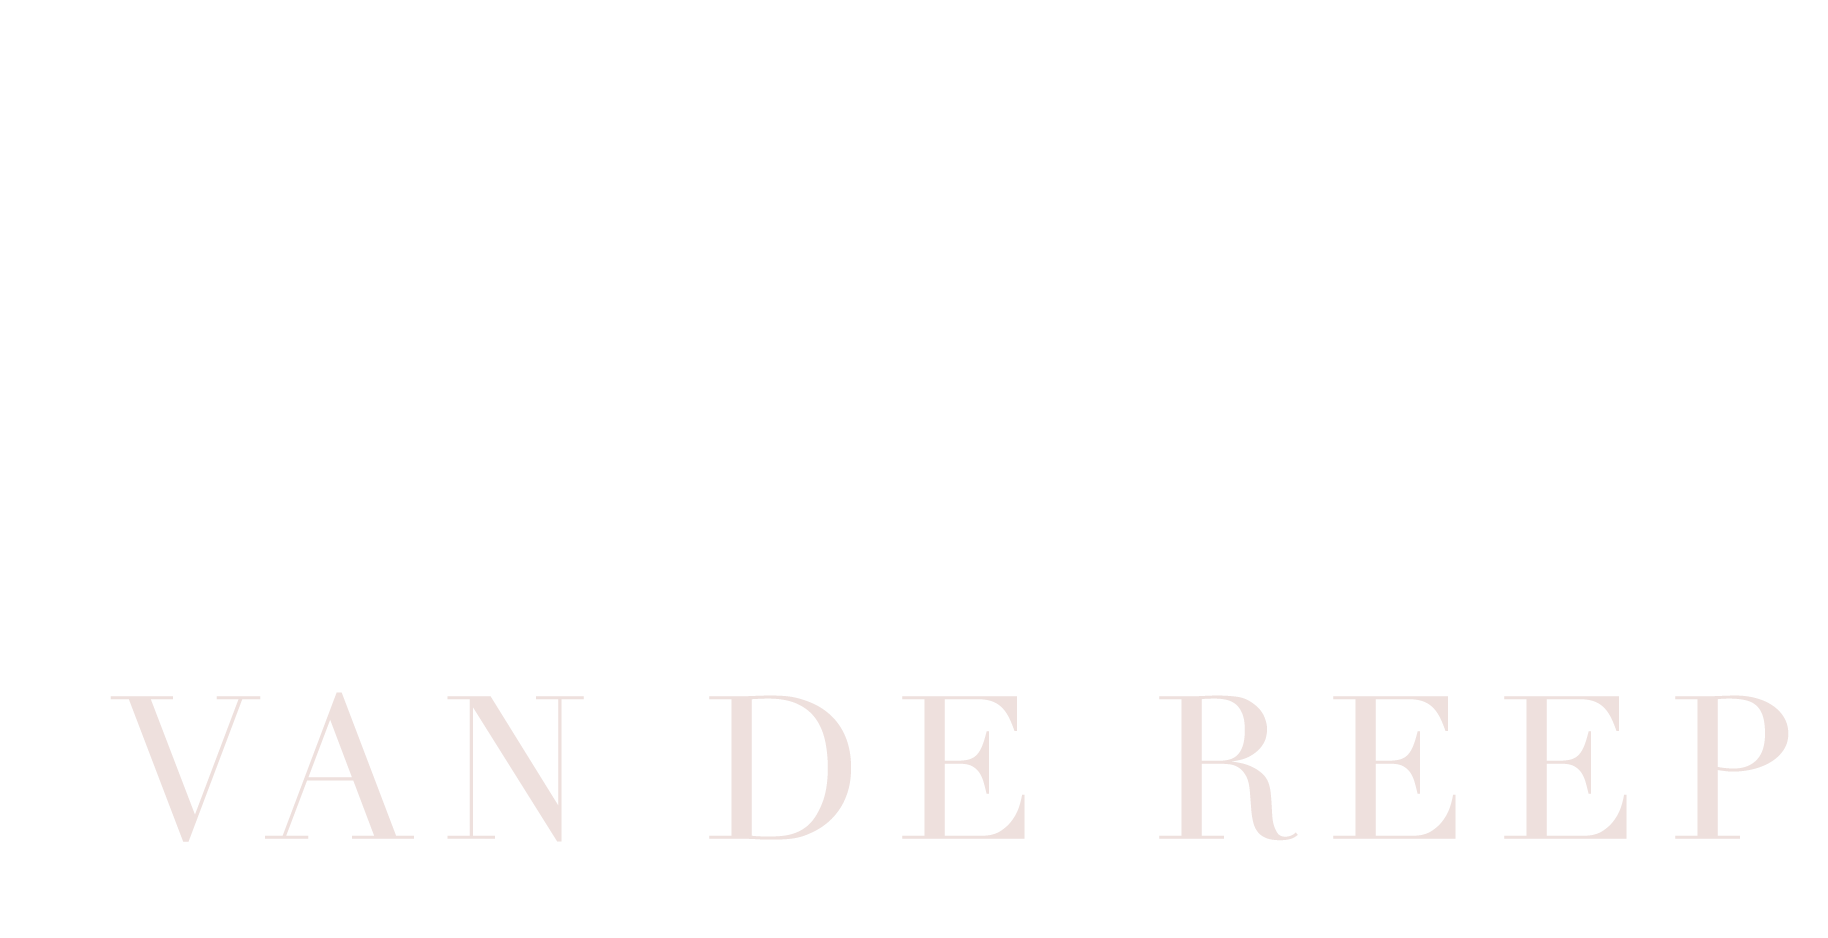 tischavandereep.com